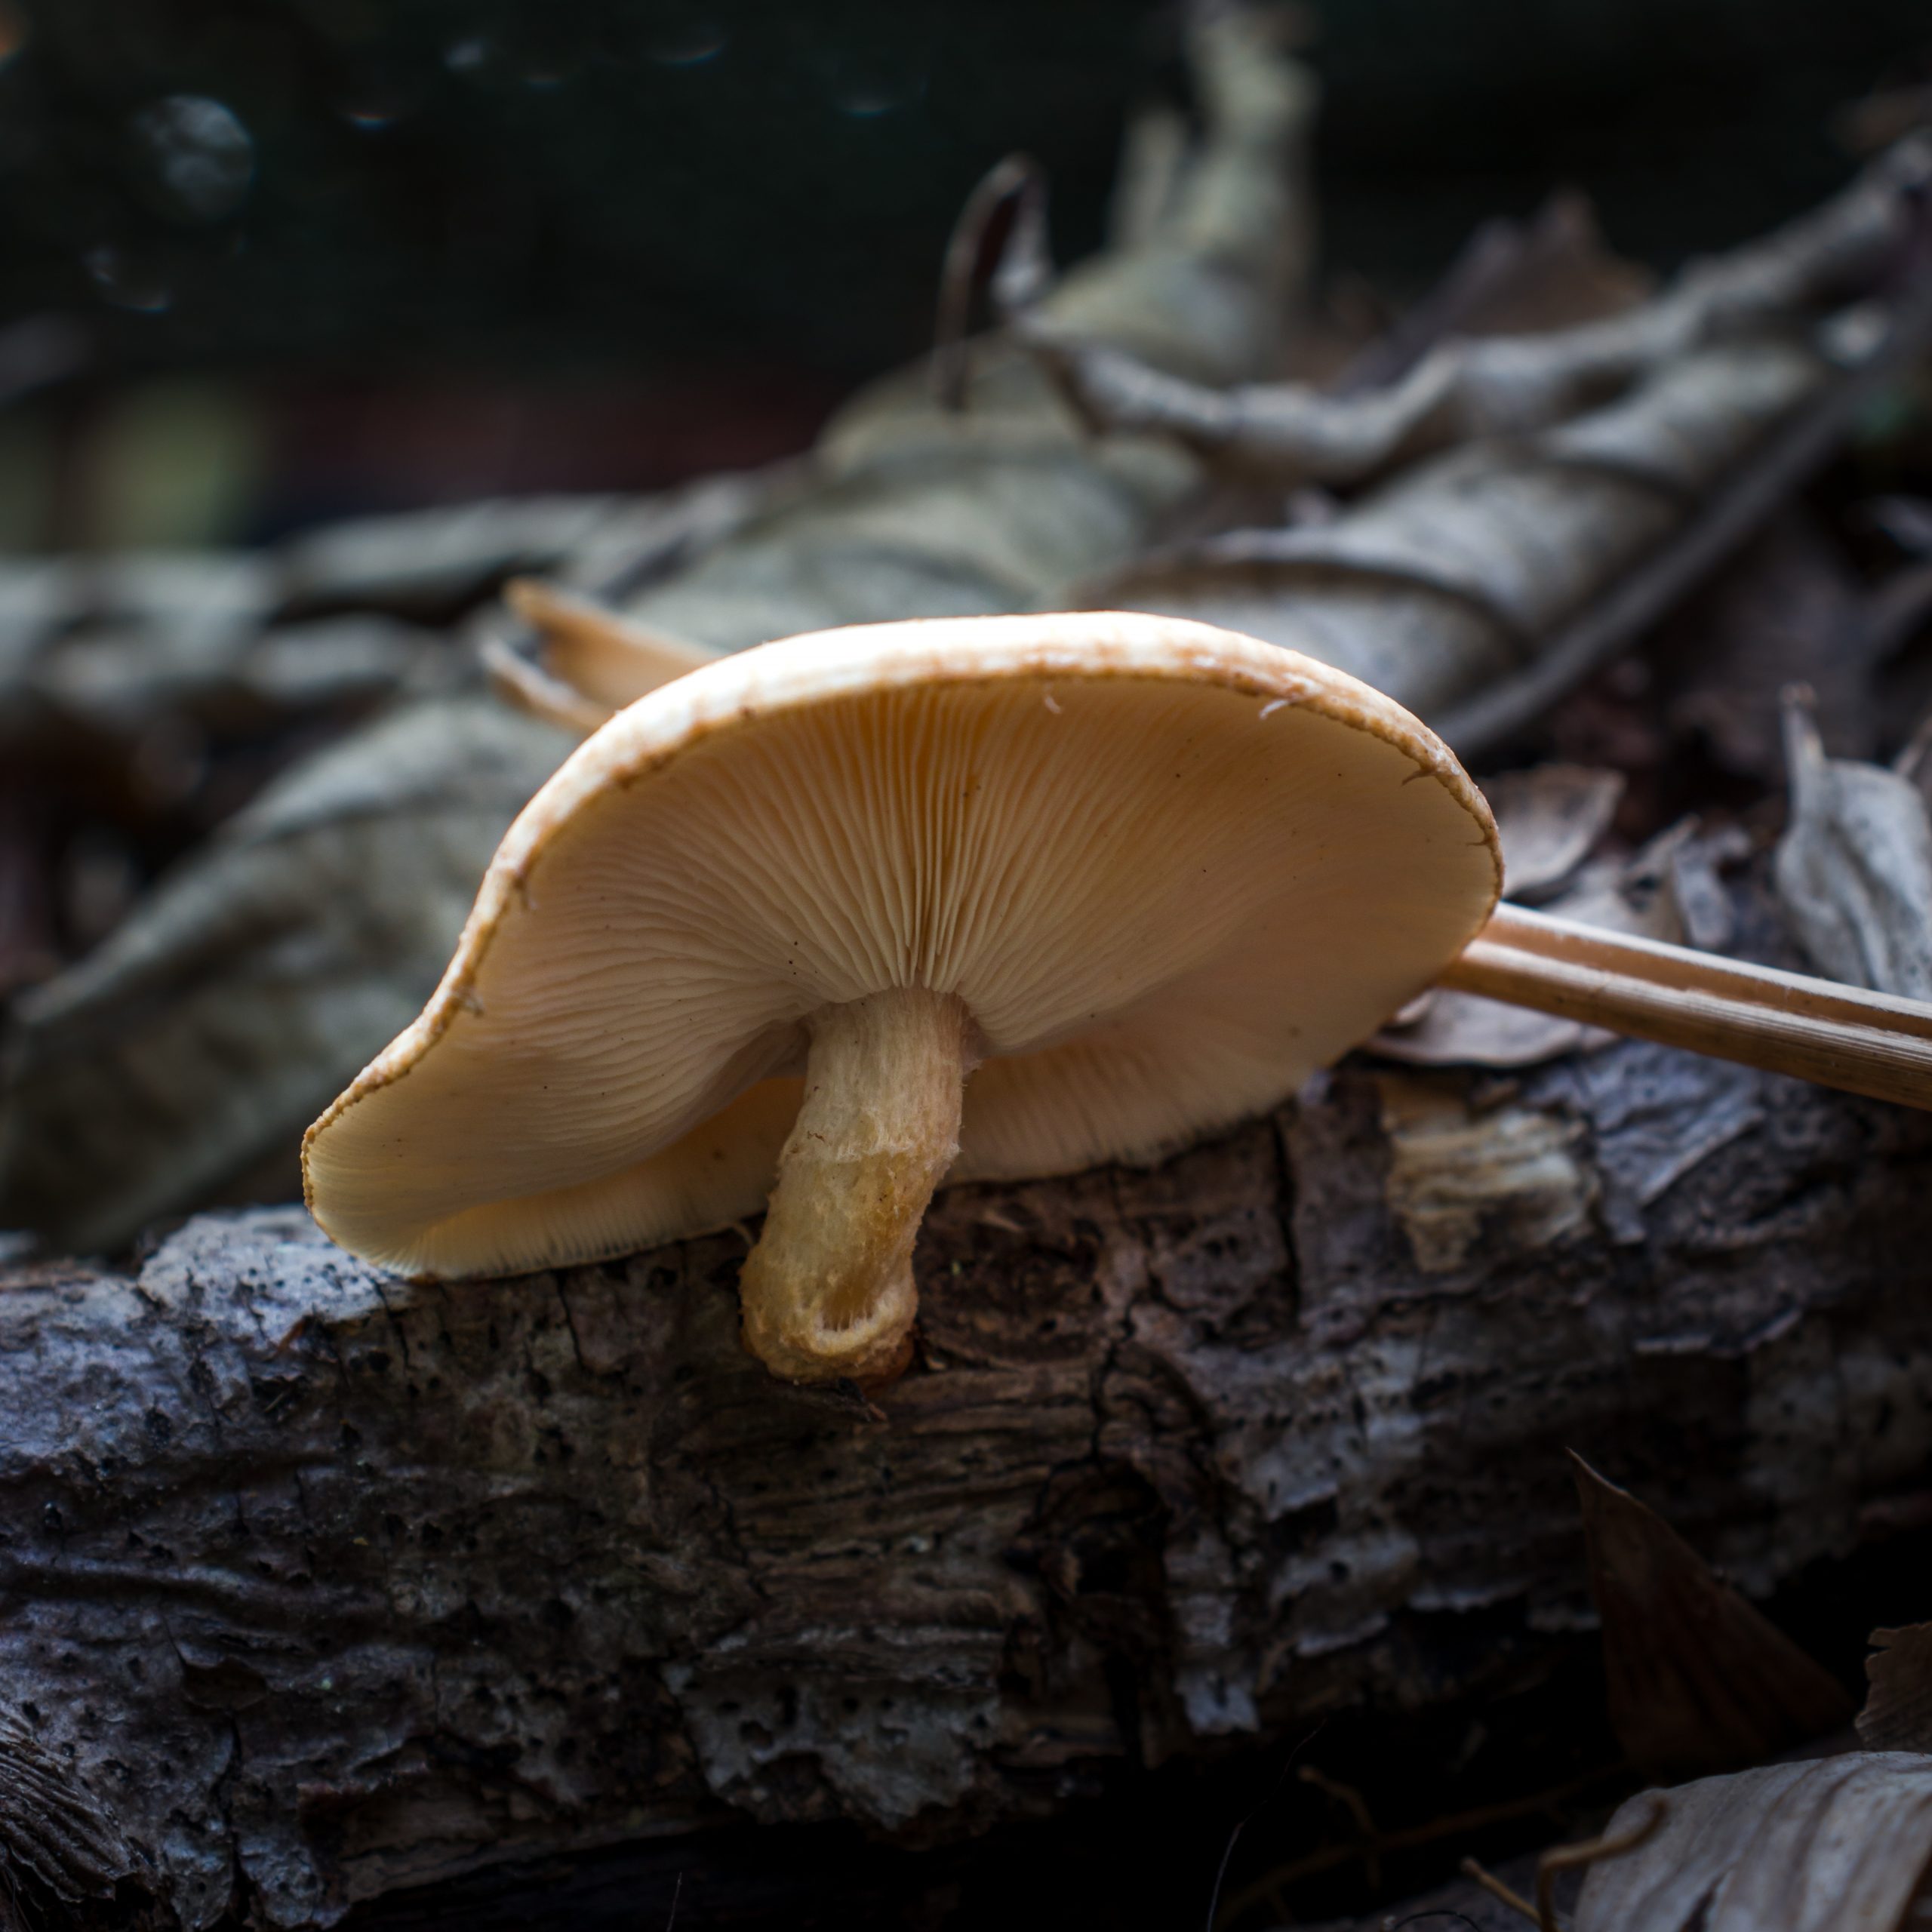 A mushroom growing on tree bark